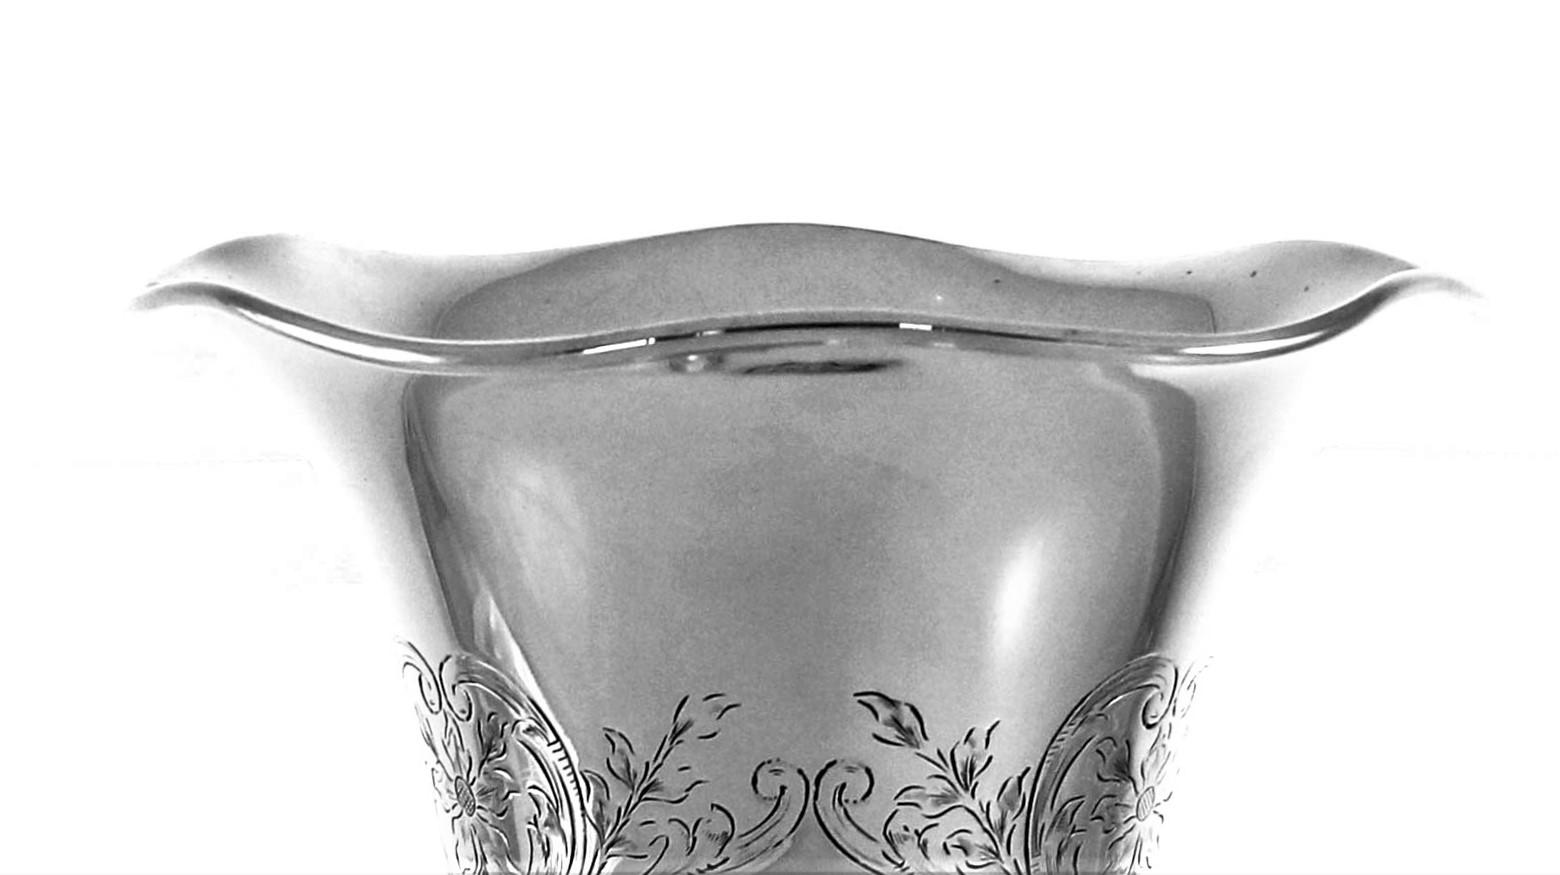 Diese schöne Vase aus Sterlingsilber hat einen gewellten Rand und eine schöne Silhouette. Die Form ist kurvenreich und weich. Um den Sockel herum und auf dem gesamten Korpus finden sich geätzte Blumen, Blätter und Wirbelmuster. Die Dekoration ist